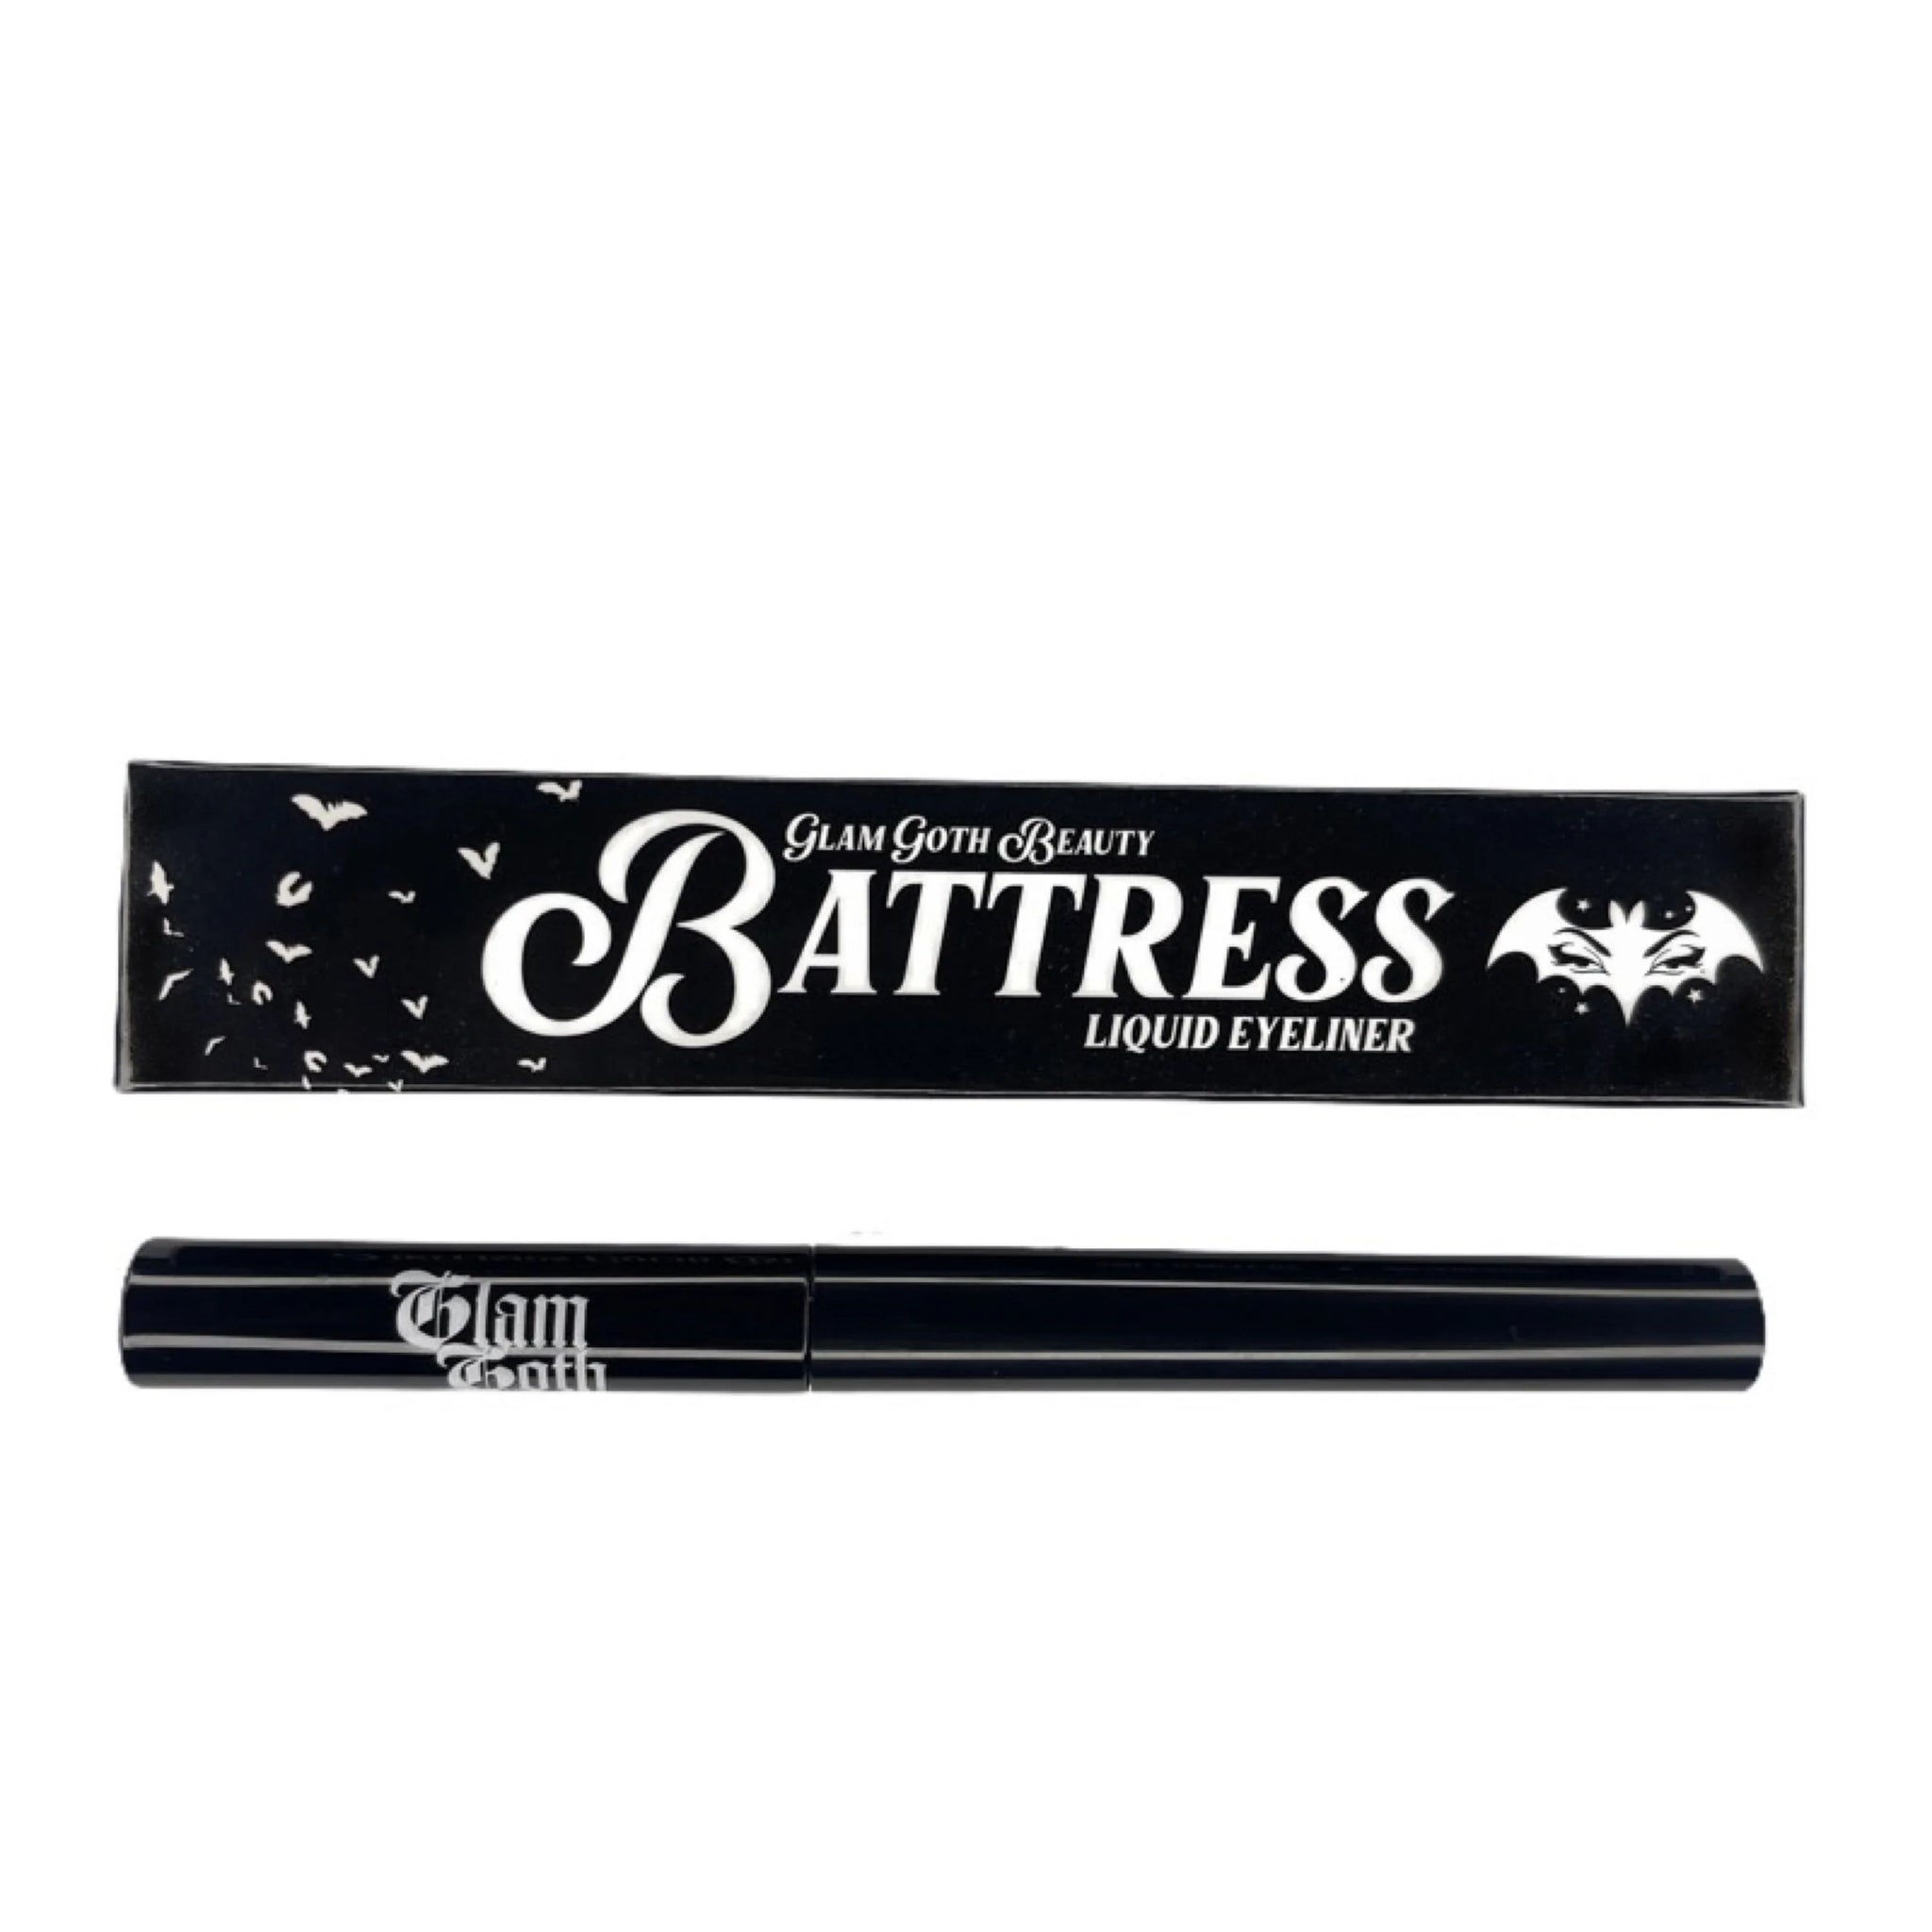 Battress Eyeliner - Midnight